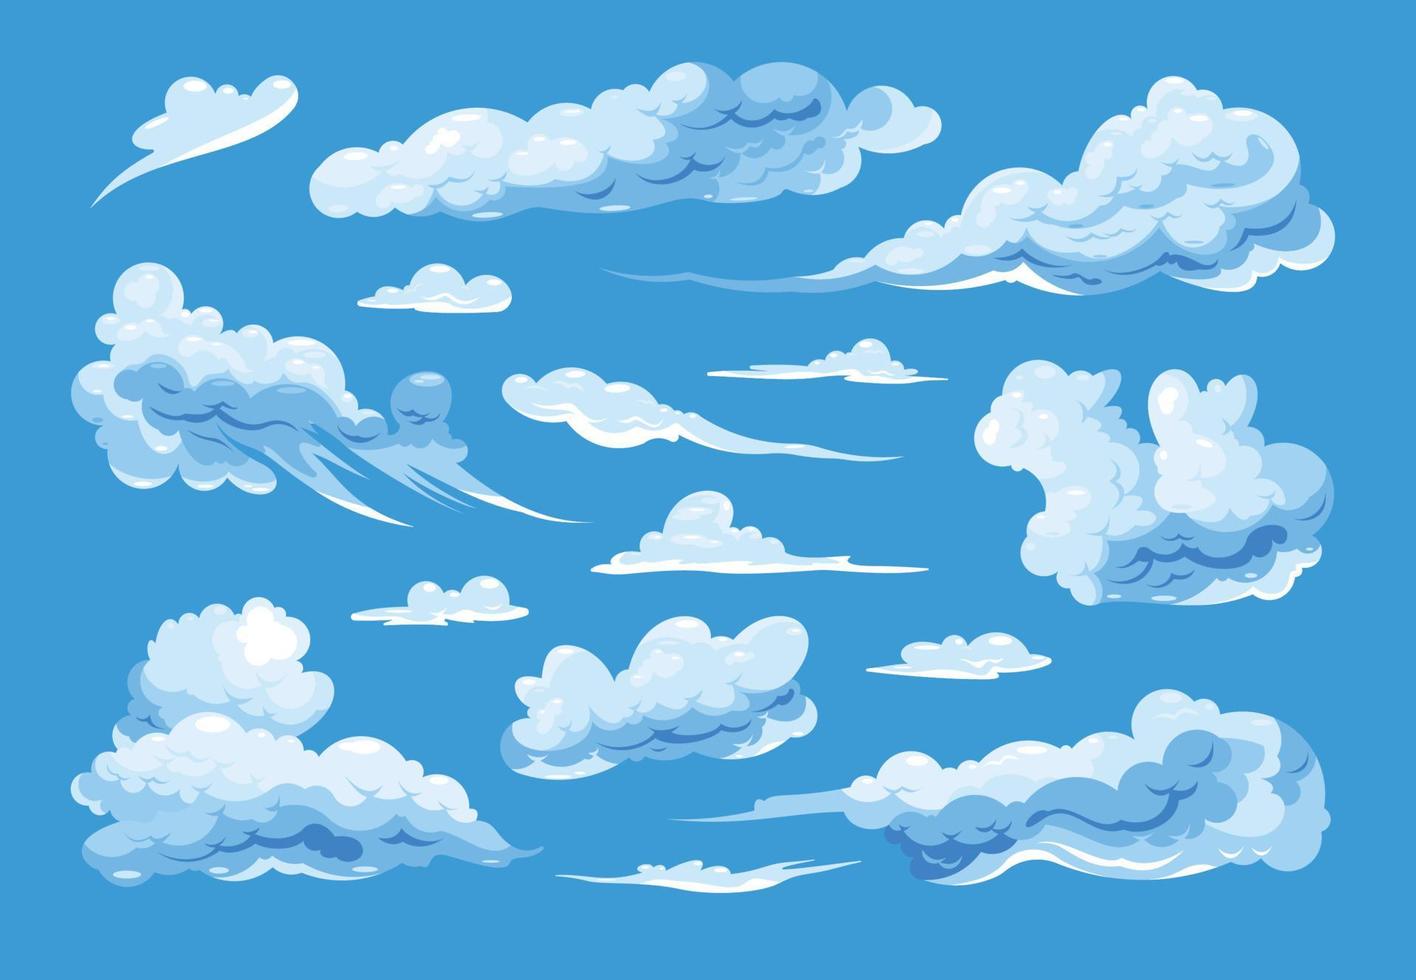 Himmelswolken auf blauem Hintergrund vektor